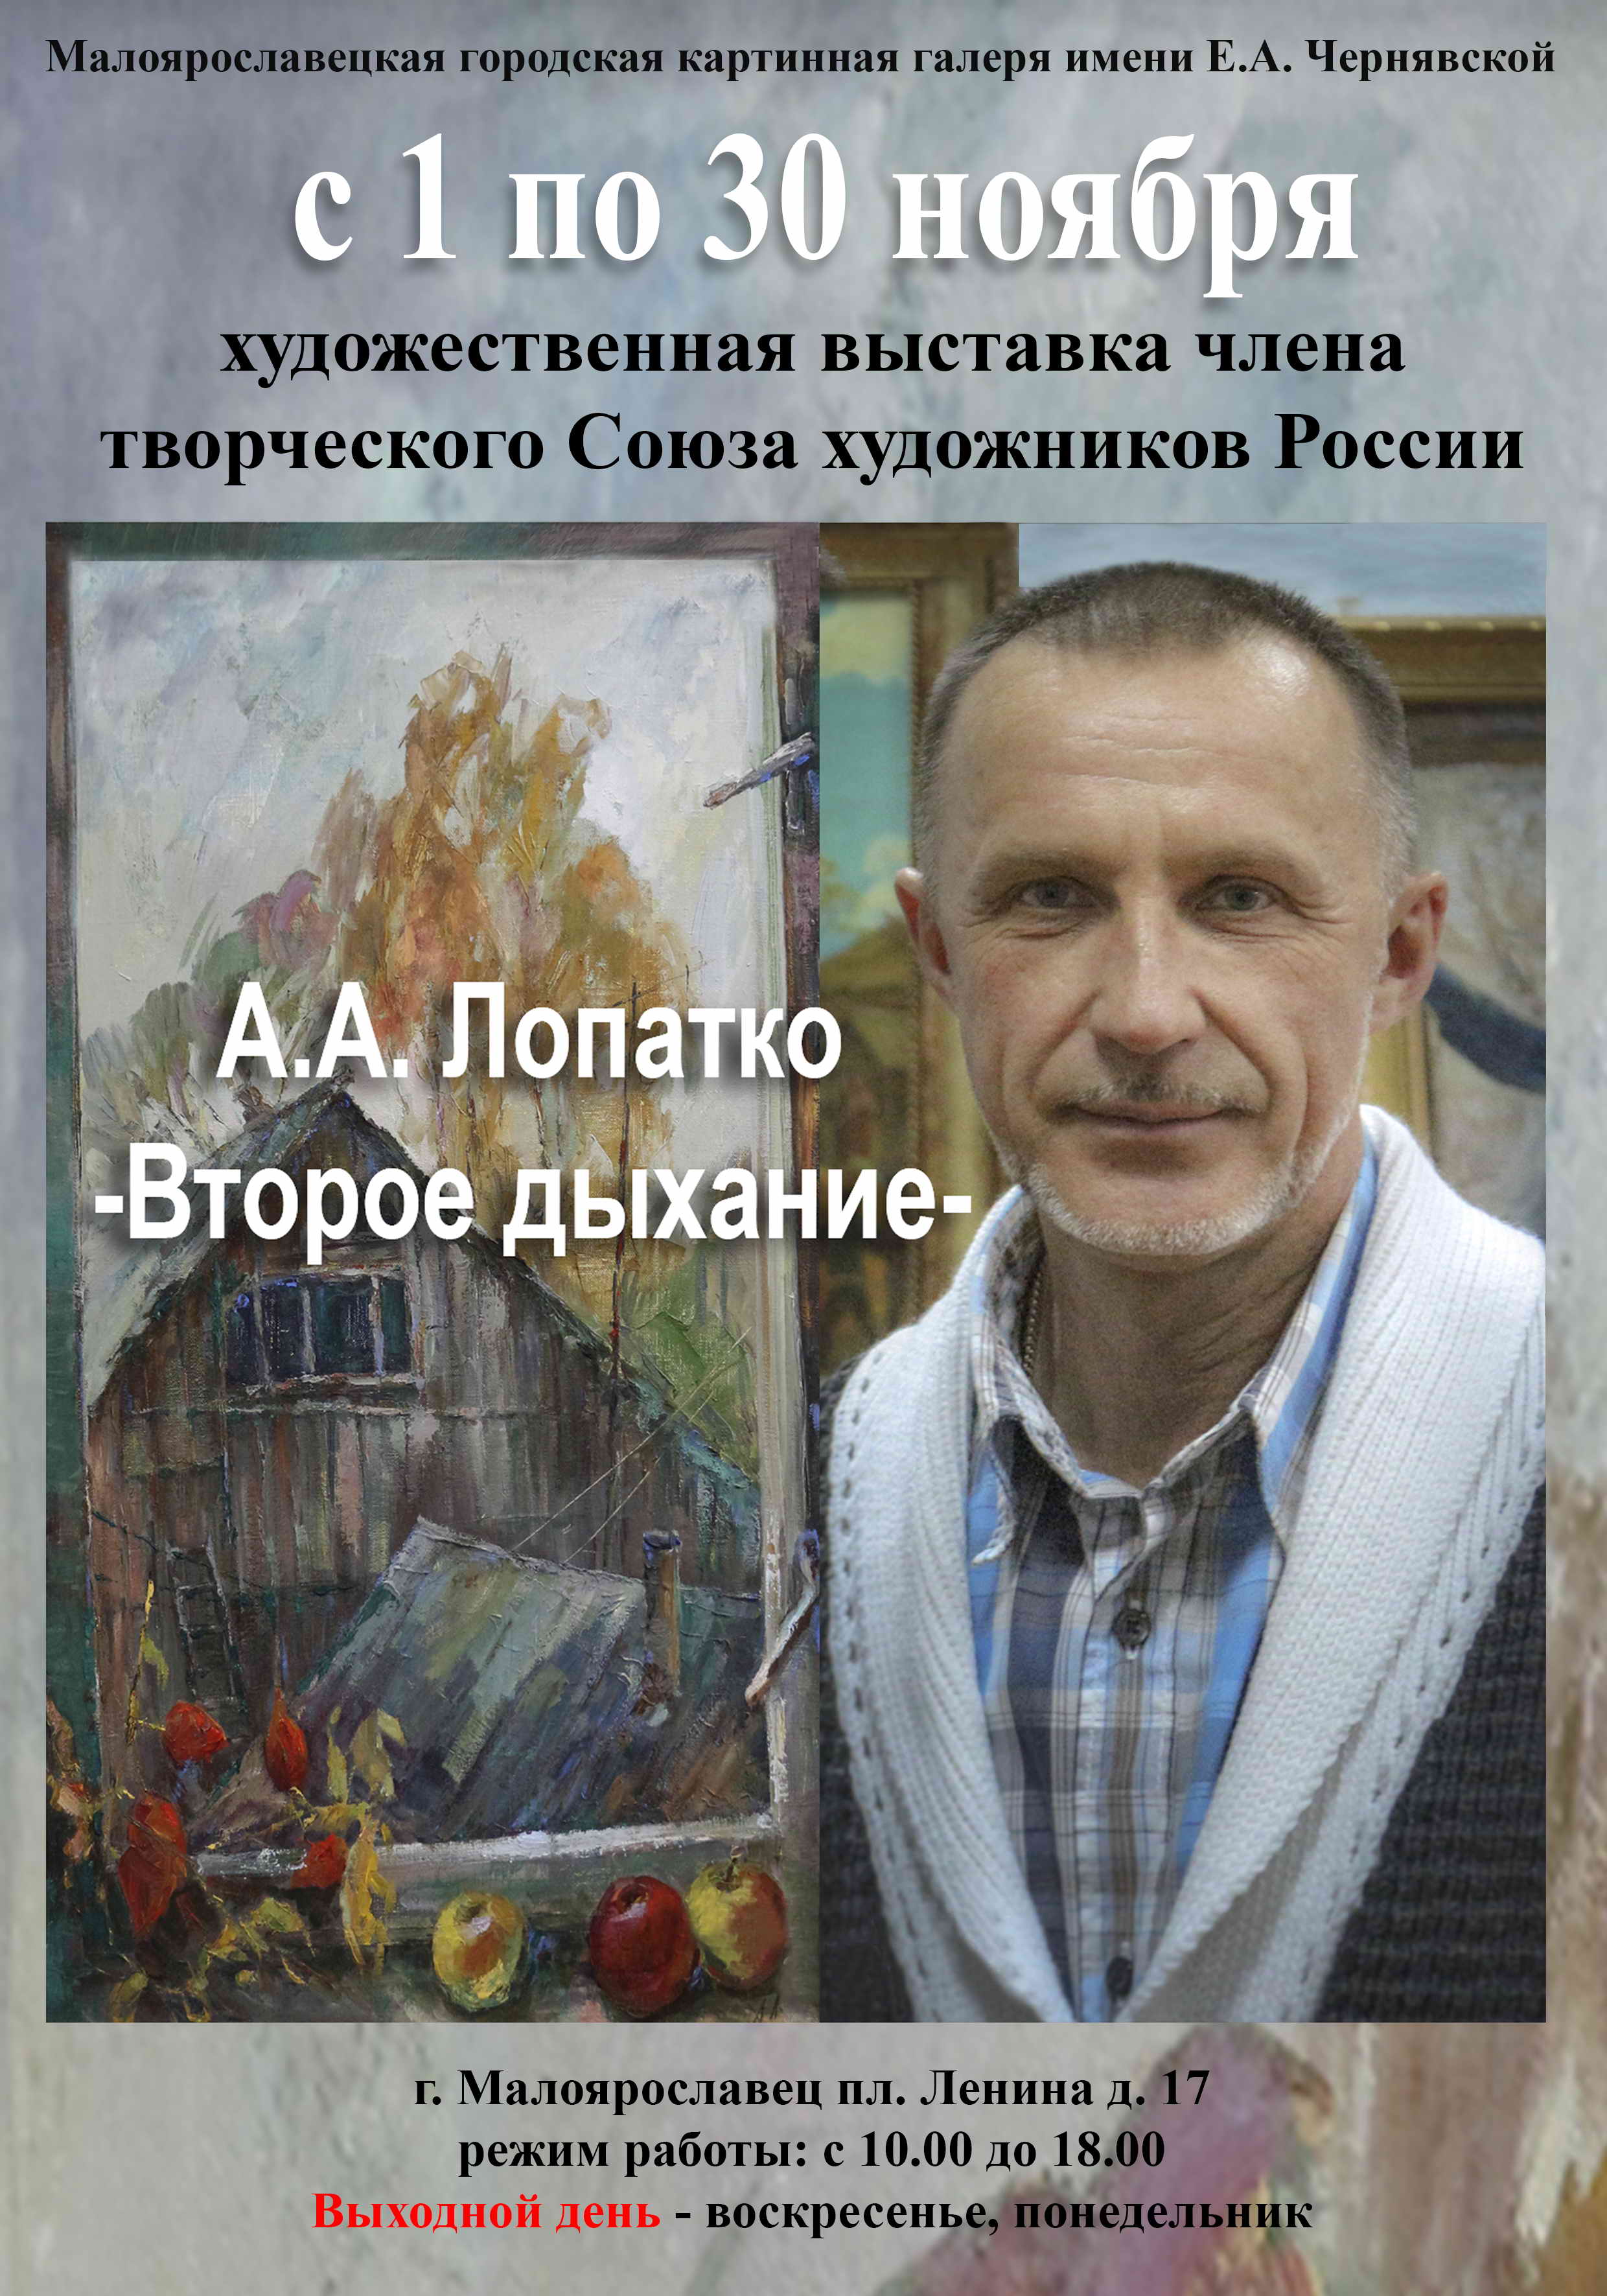 Анатолий Лопатко "Второе дыхание" 2016г.